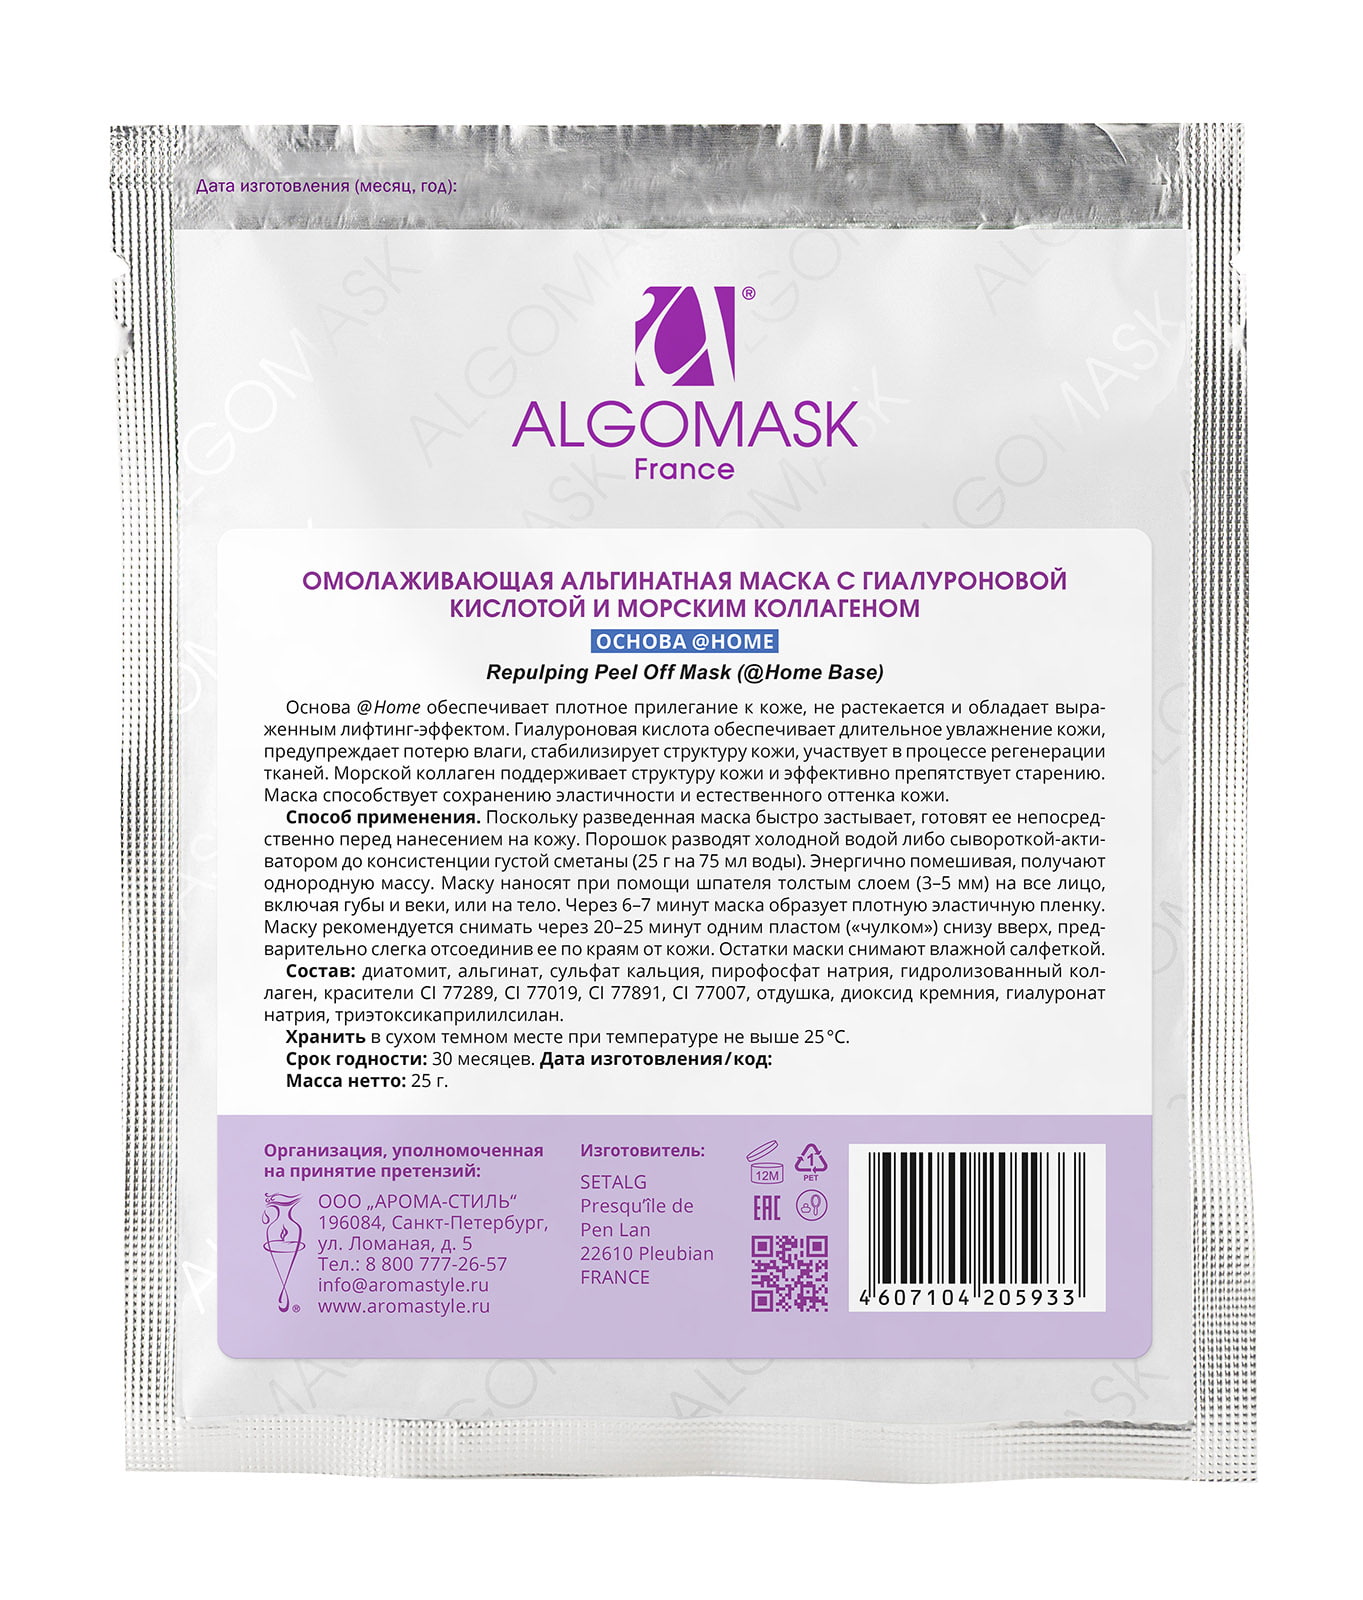 Омолаживающая альгинатная маска с гиалуроновой кислотой и морским коллагеном home base - 25  г